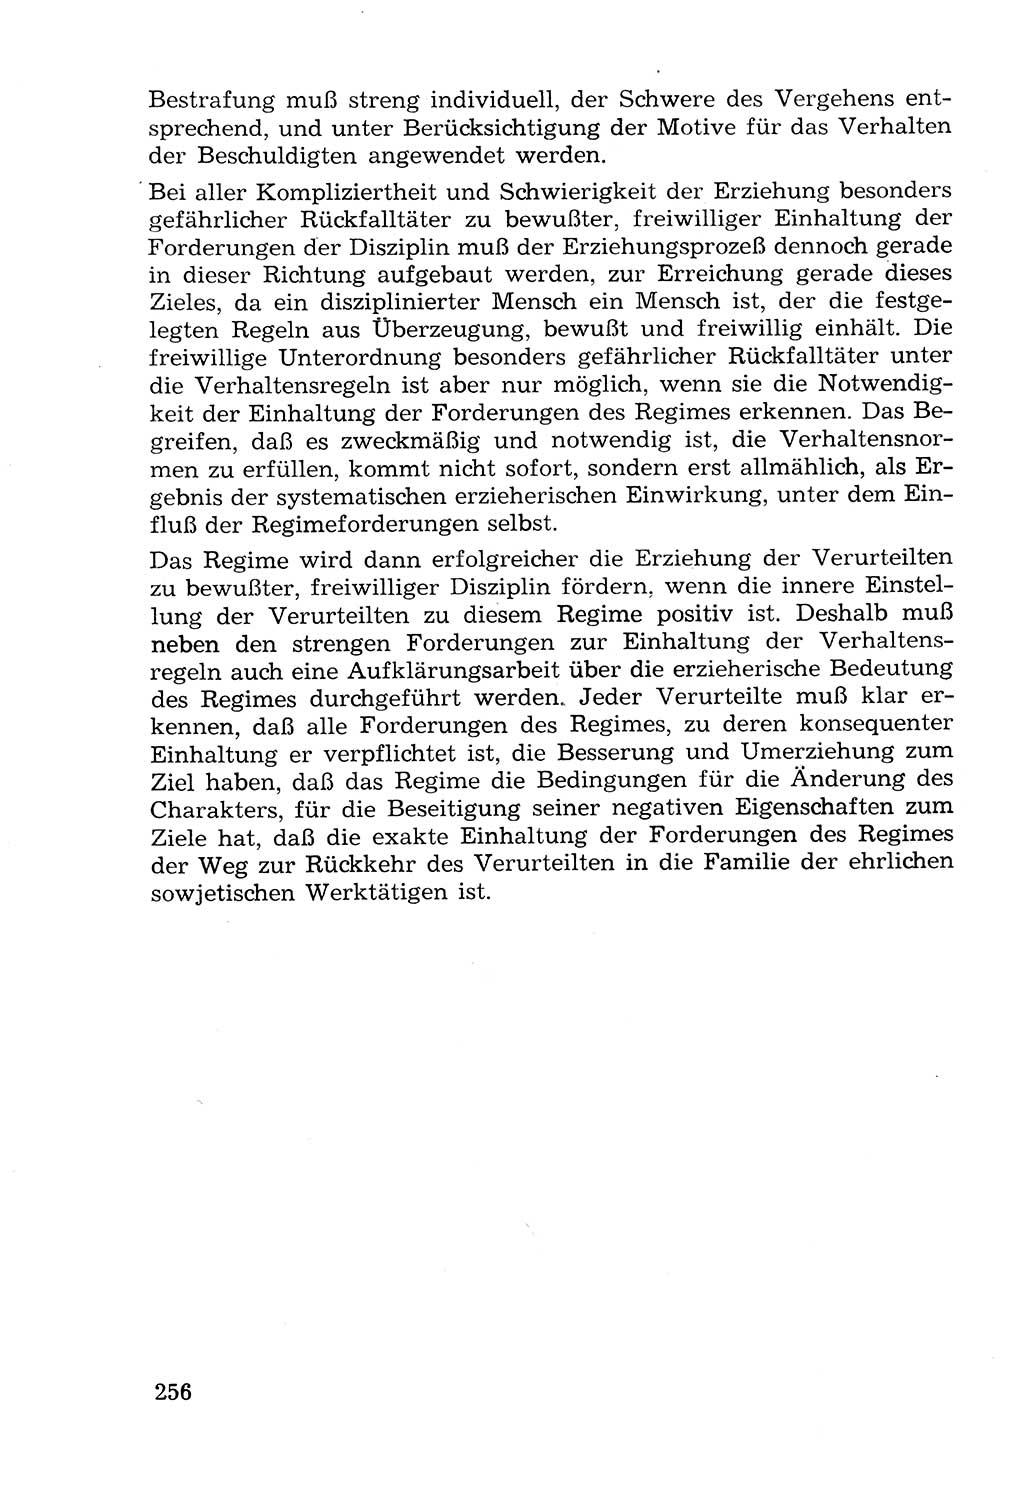 Lehrbuch der Strafvollzugspädagogik [Deutsche Demokratische Republik (DDR)] 1969, Seite 256 (Lb. SV-Pd. DDR 1969, S. 256)